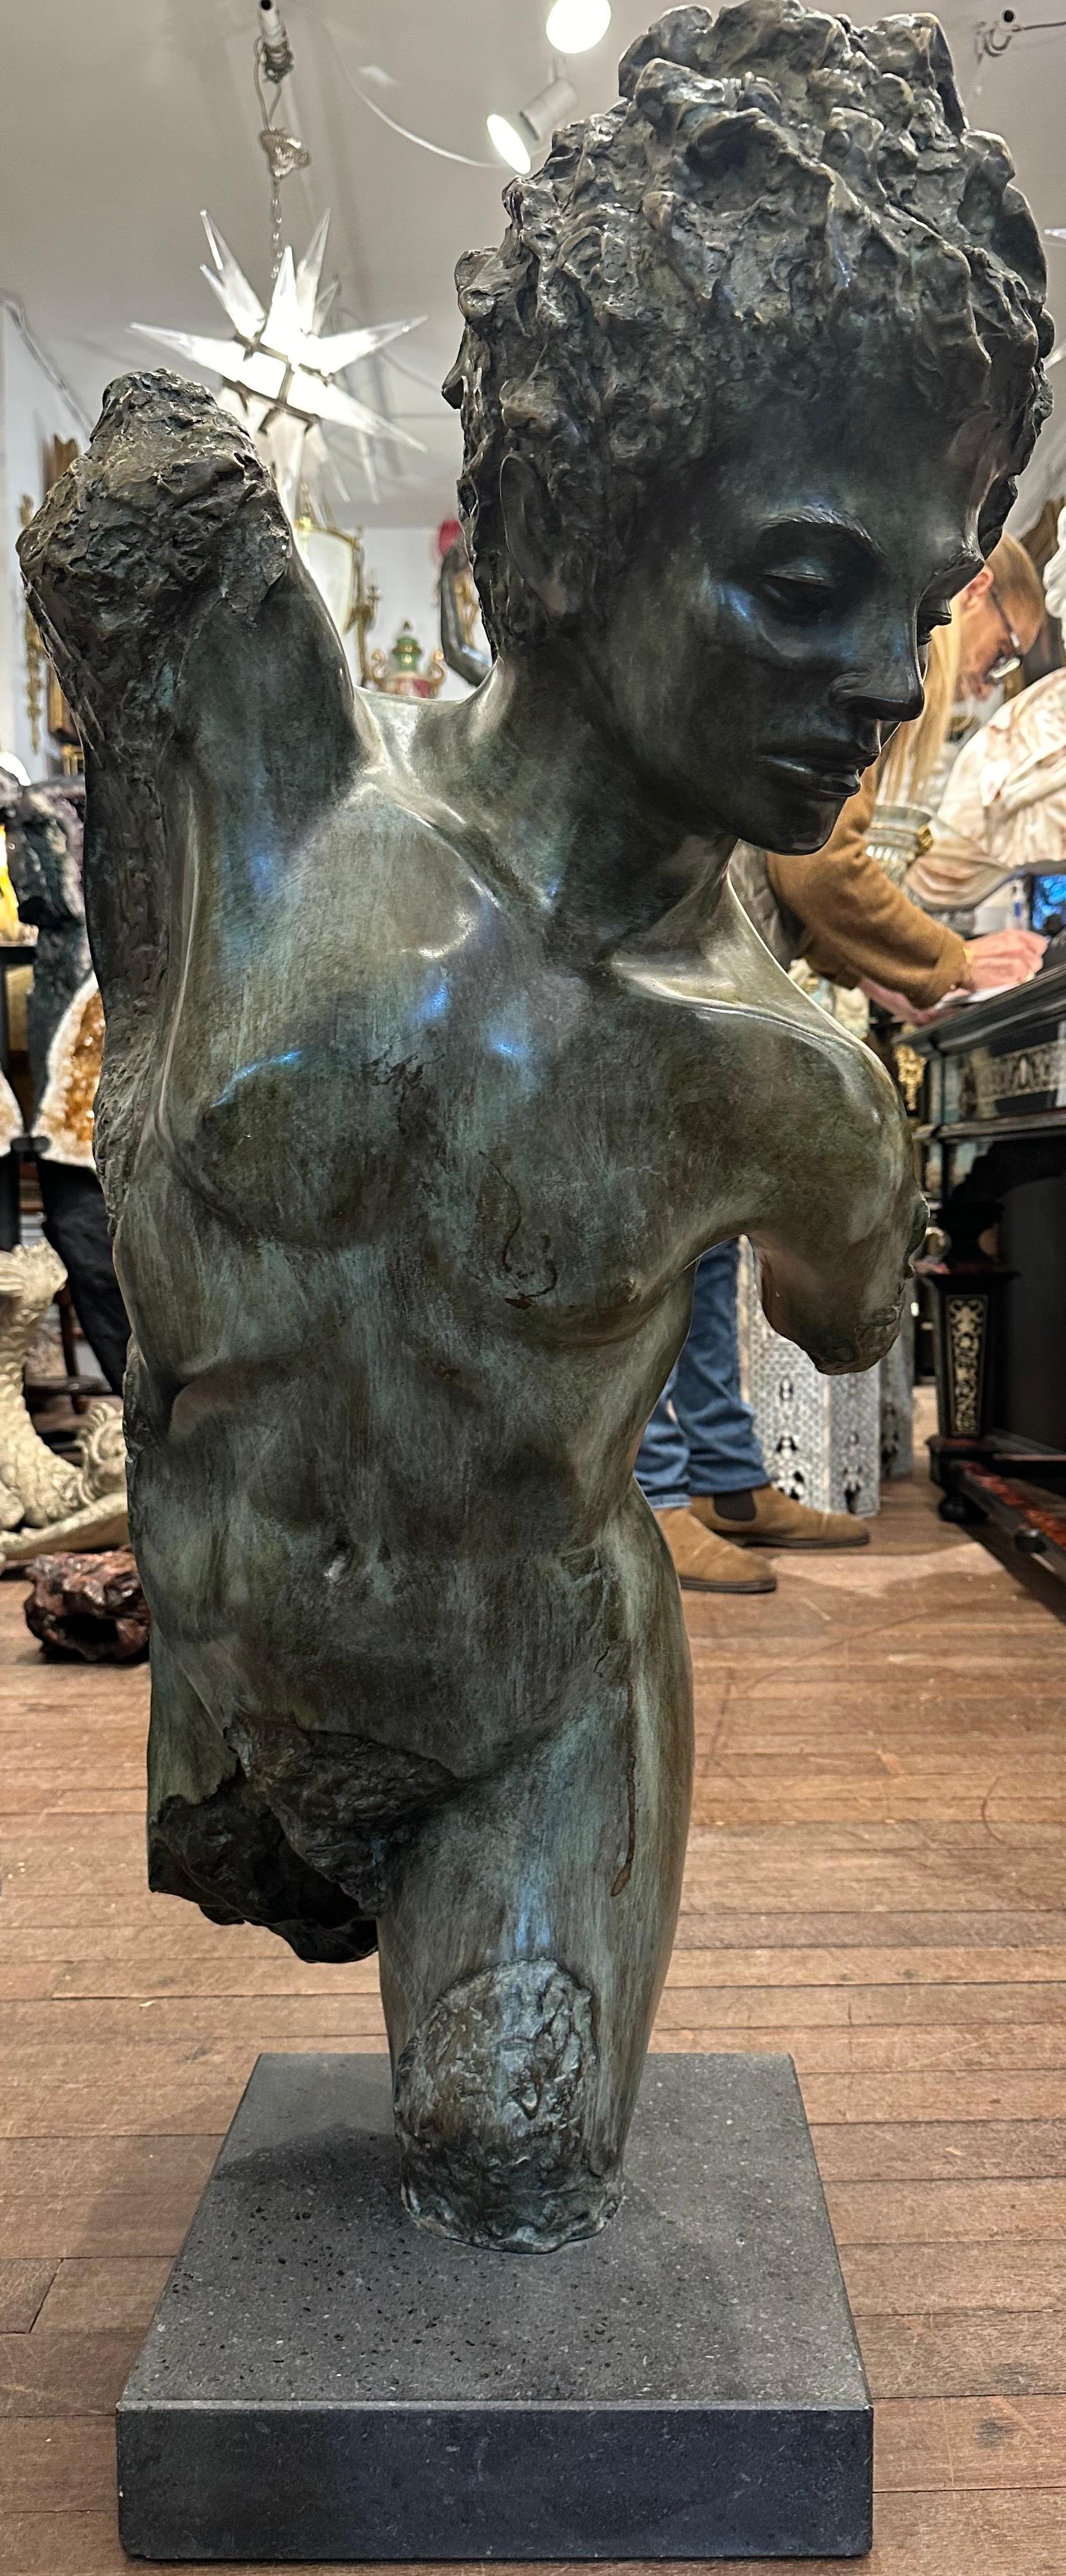 Attraktiver, stilisierter Bronzeguss eines männlichen Torsos auf einem Sockel aus schwarzem Marmor, das Gesicht ist detailliert und gekonnt ausgeführt. Der männliche Torso ist teils poliert, teils strukturiert und mit einer dekorativen